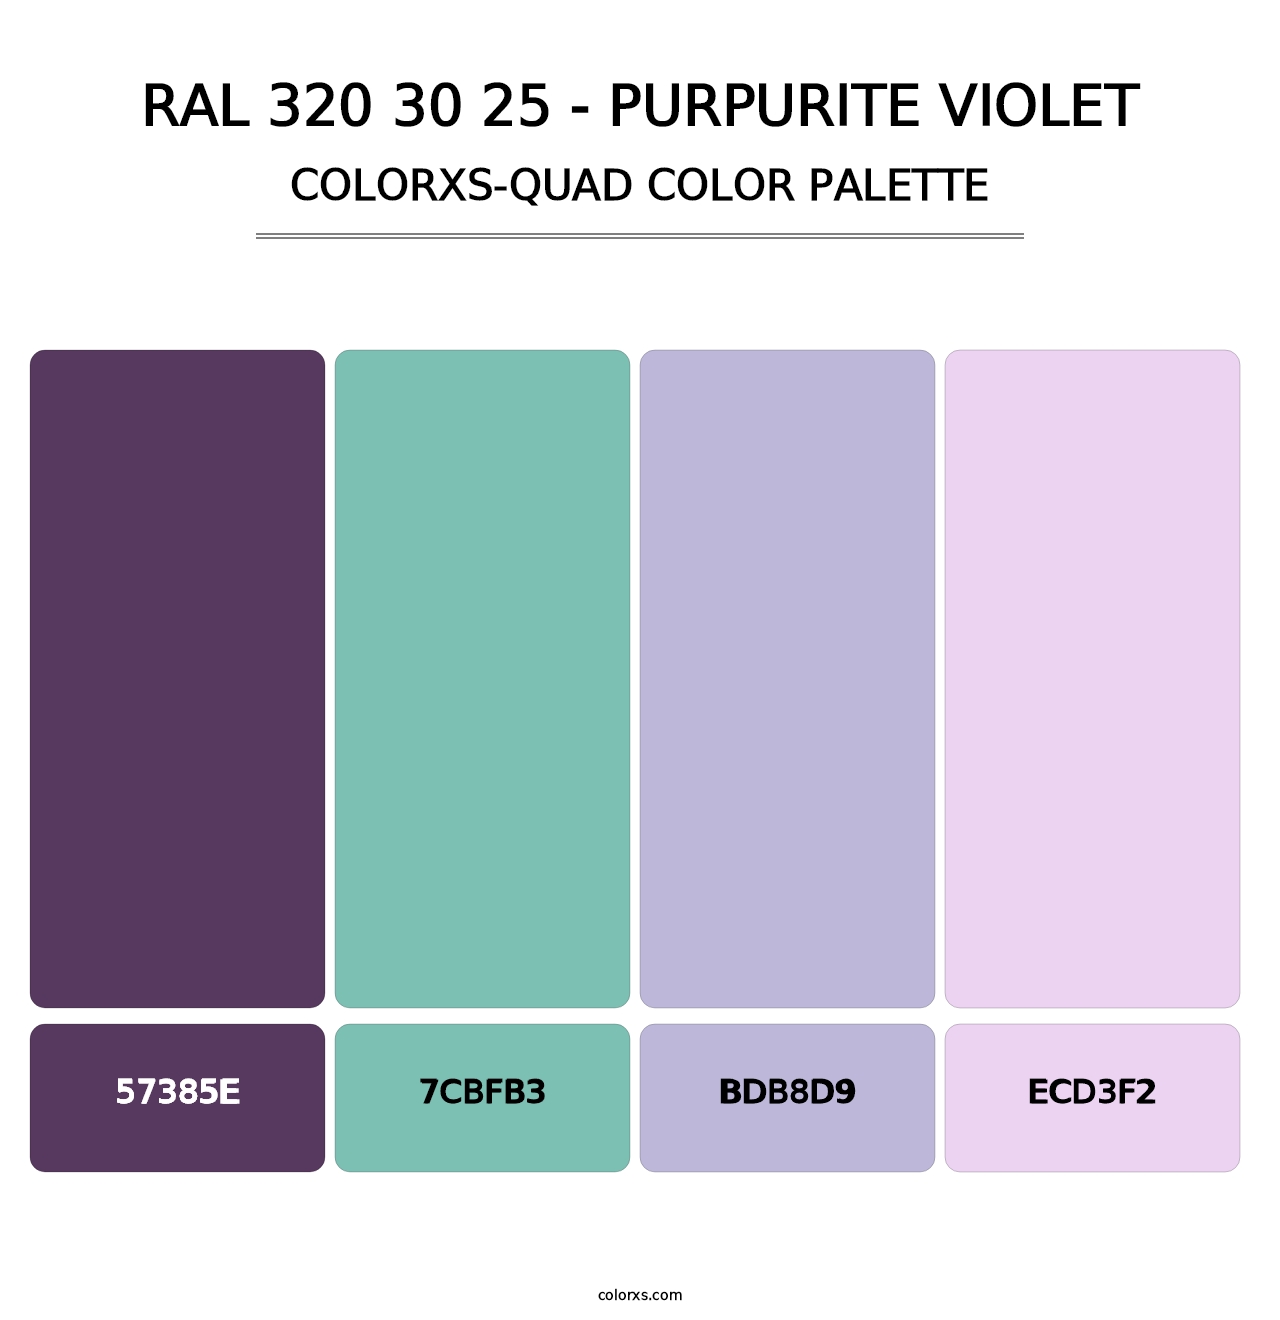 RAL 320 30 25 - Purpurite Violet - Colorxs Quad Palette